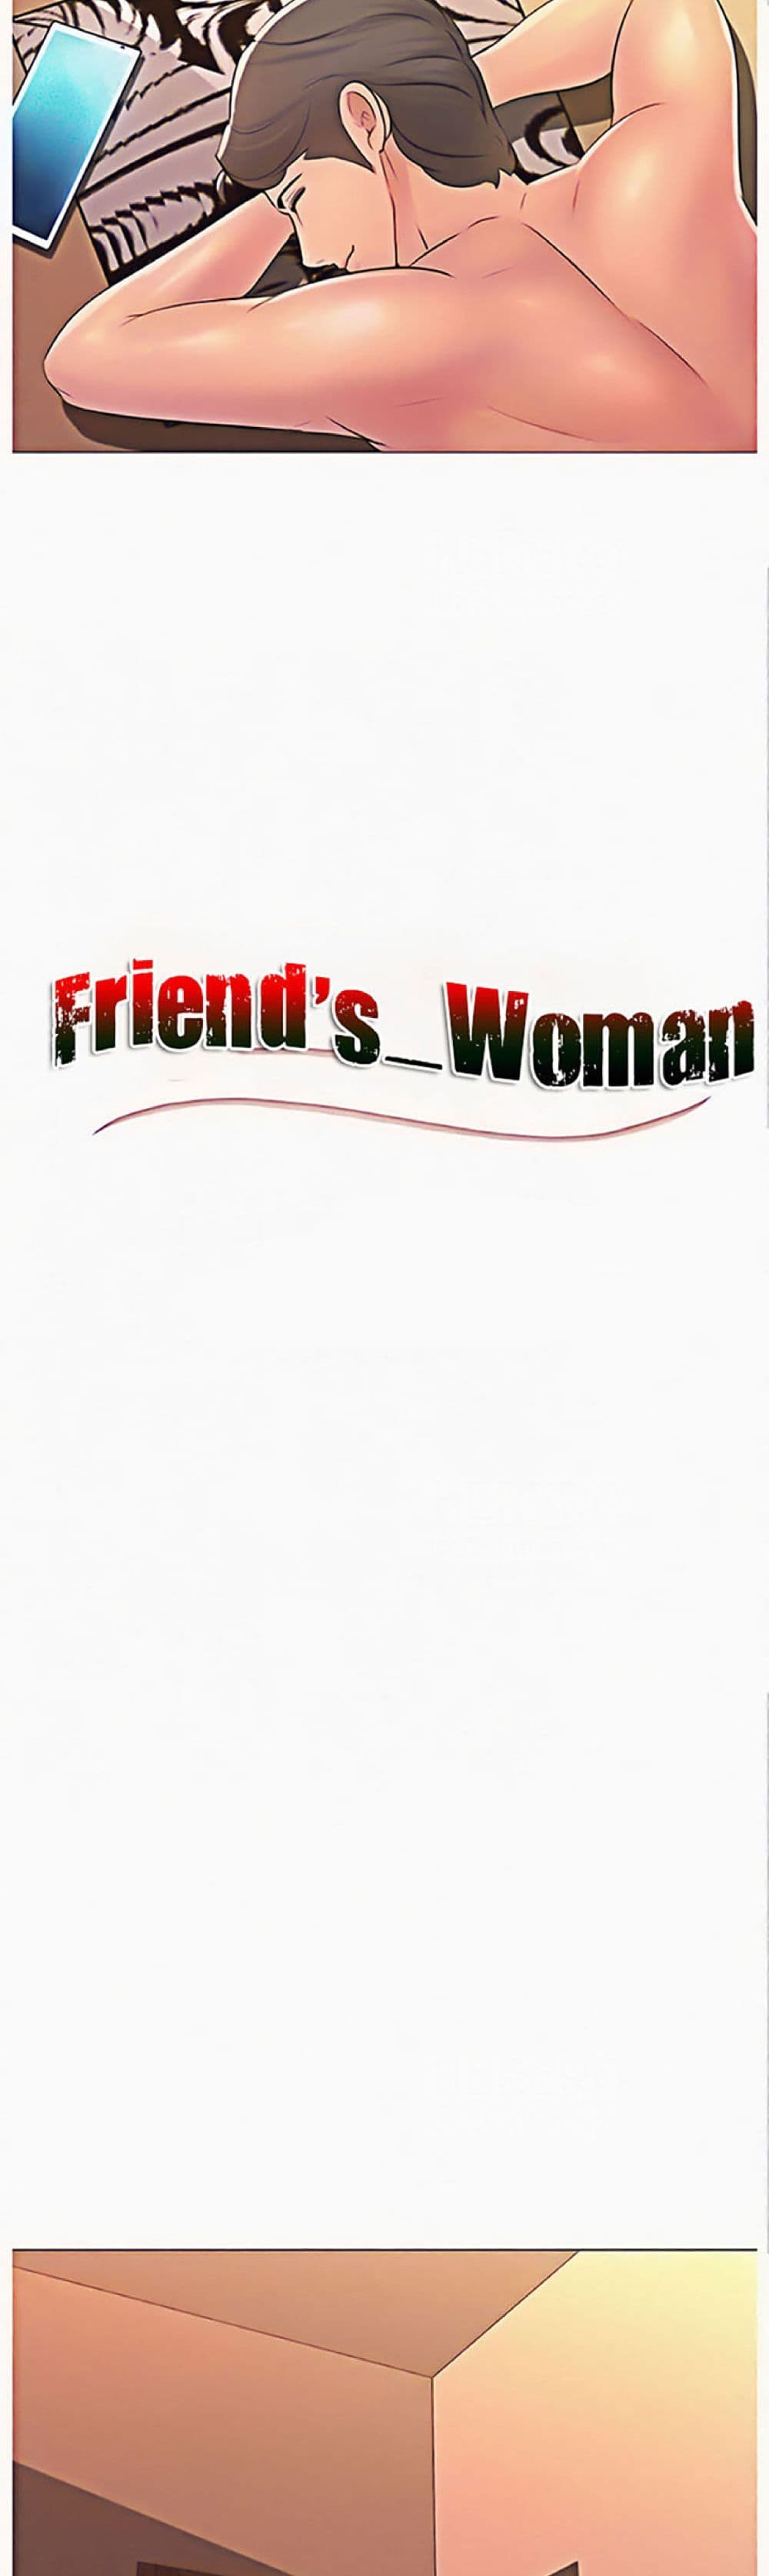 Friend's Woman 3-3